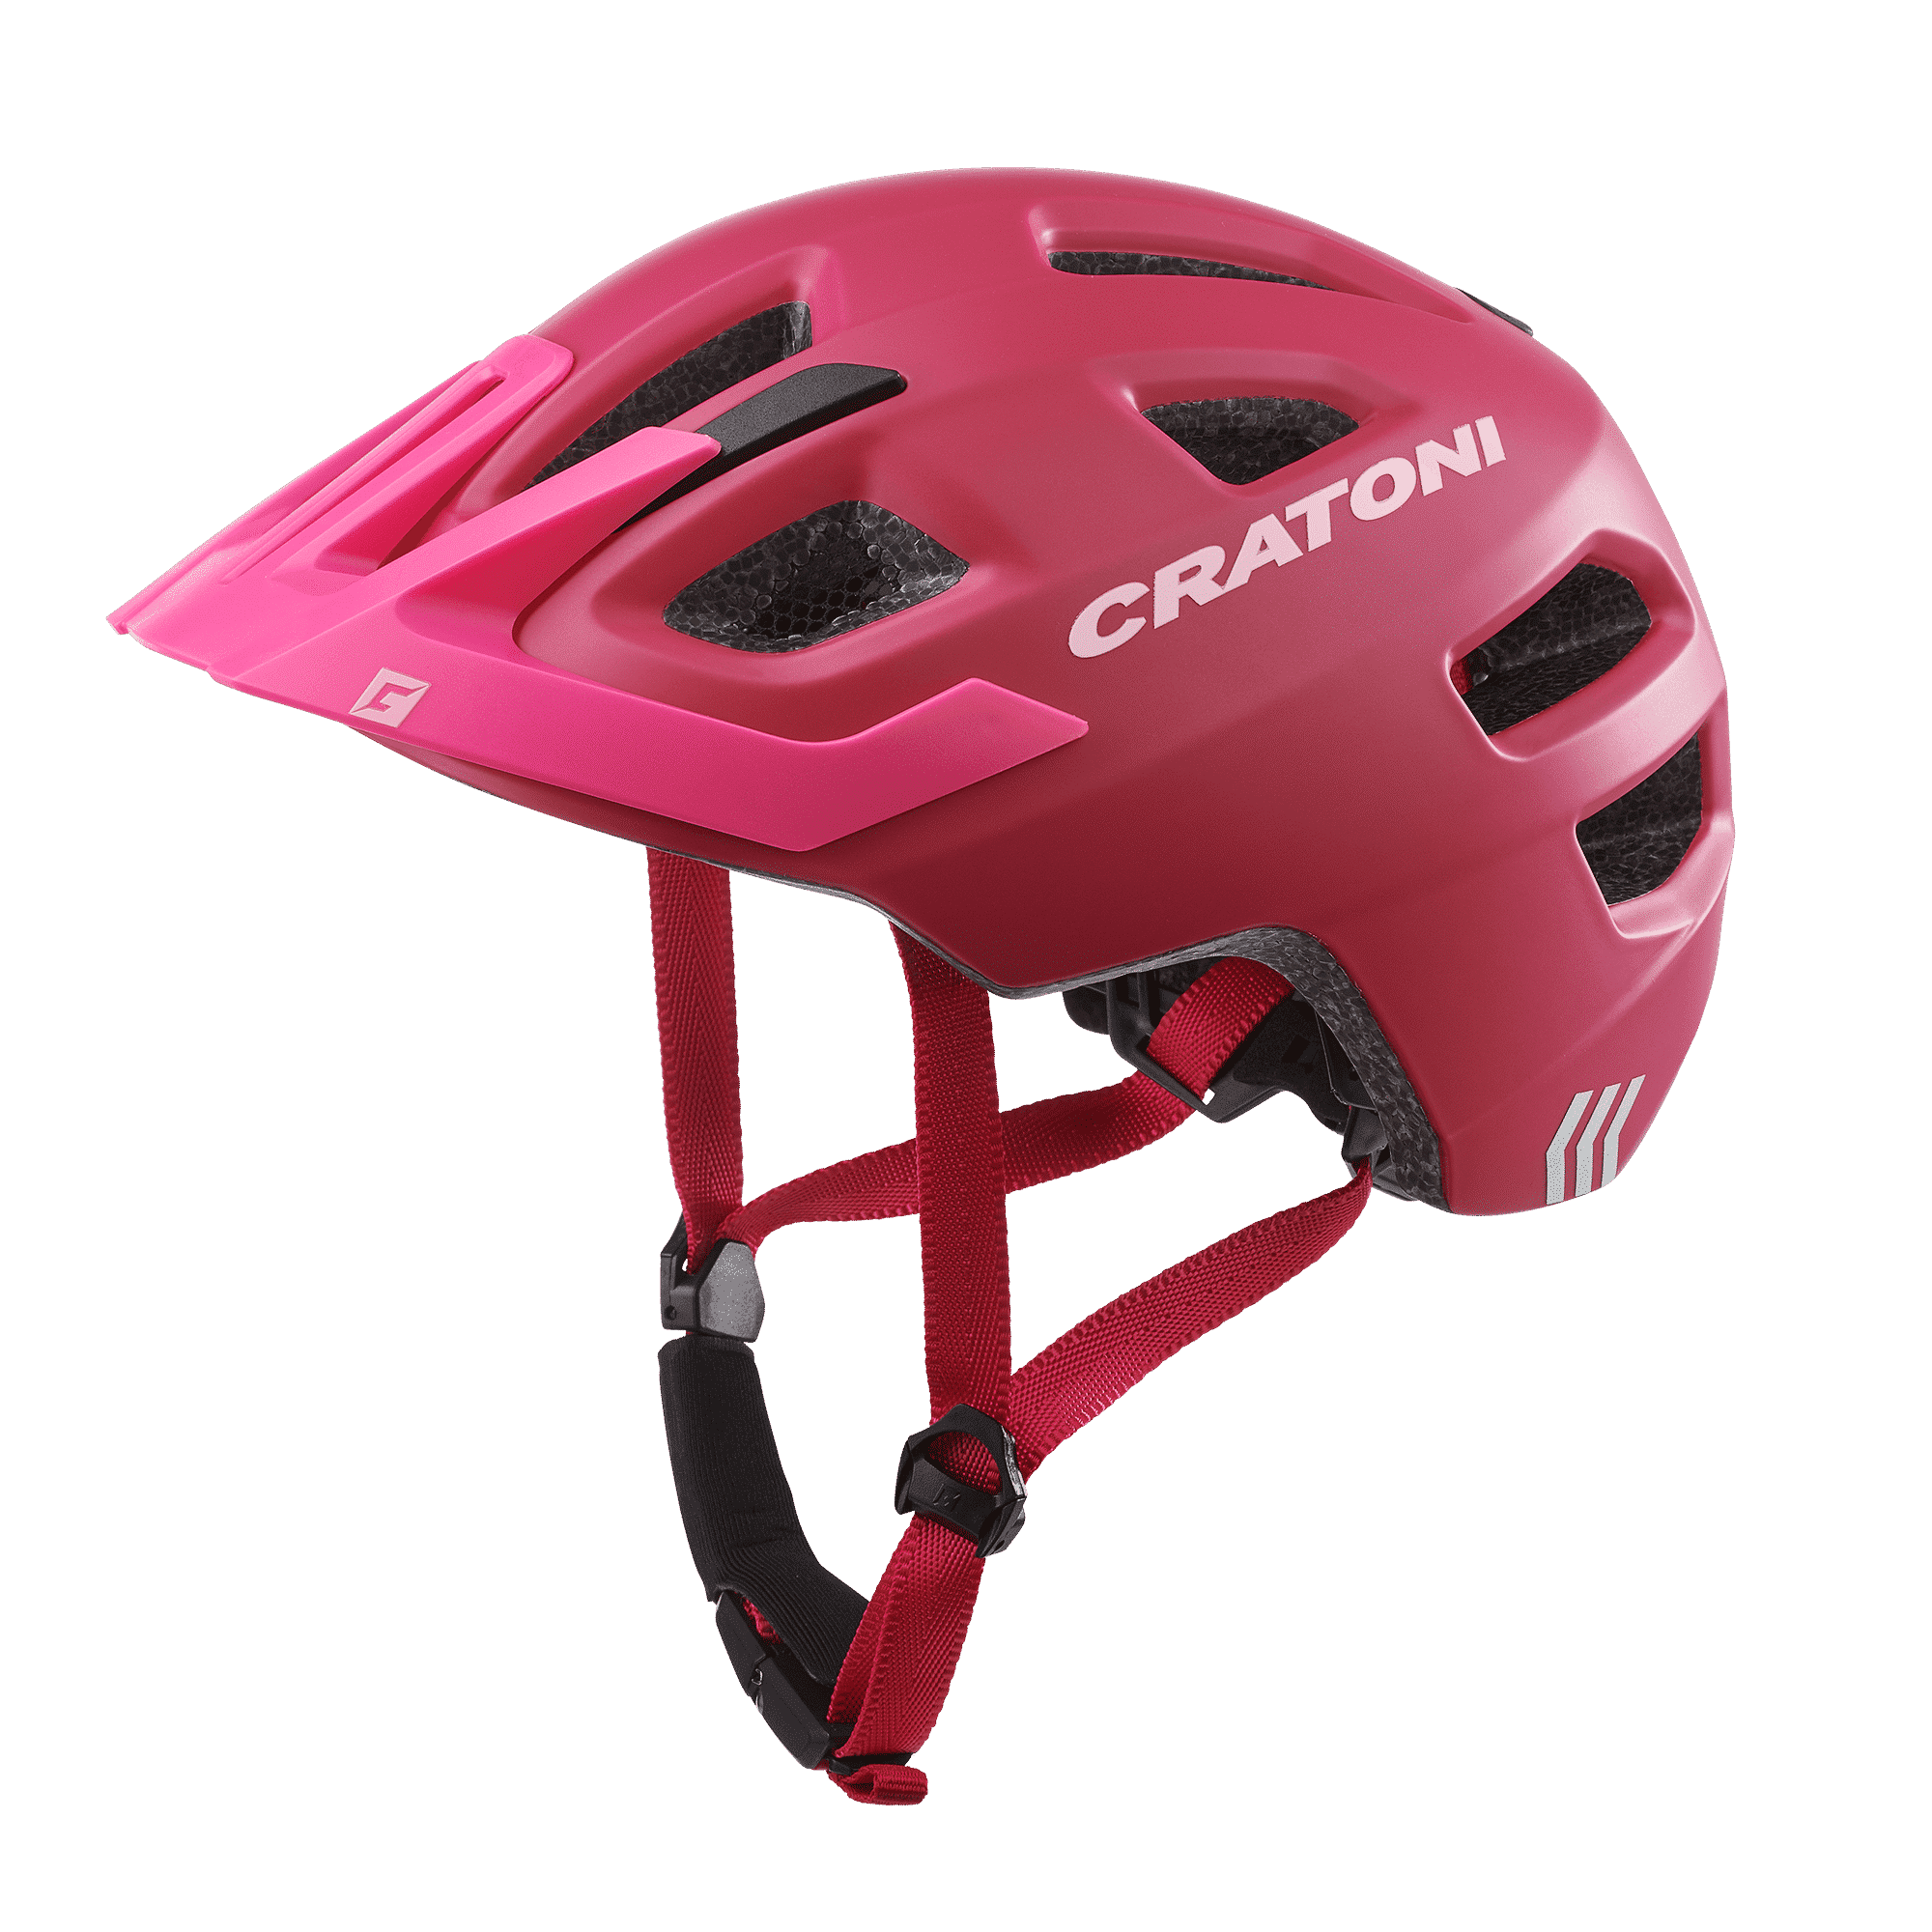 Casque vélo enfant - Casque enfant rose - XS 44/48cm